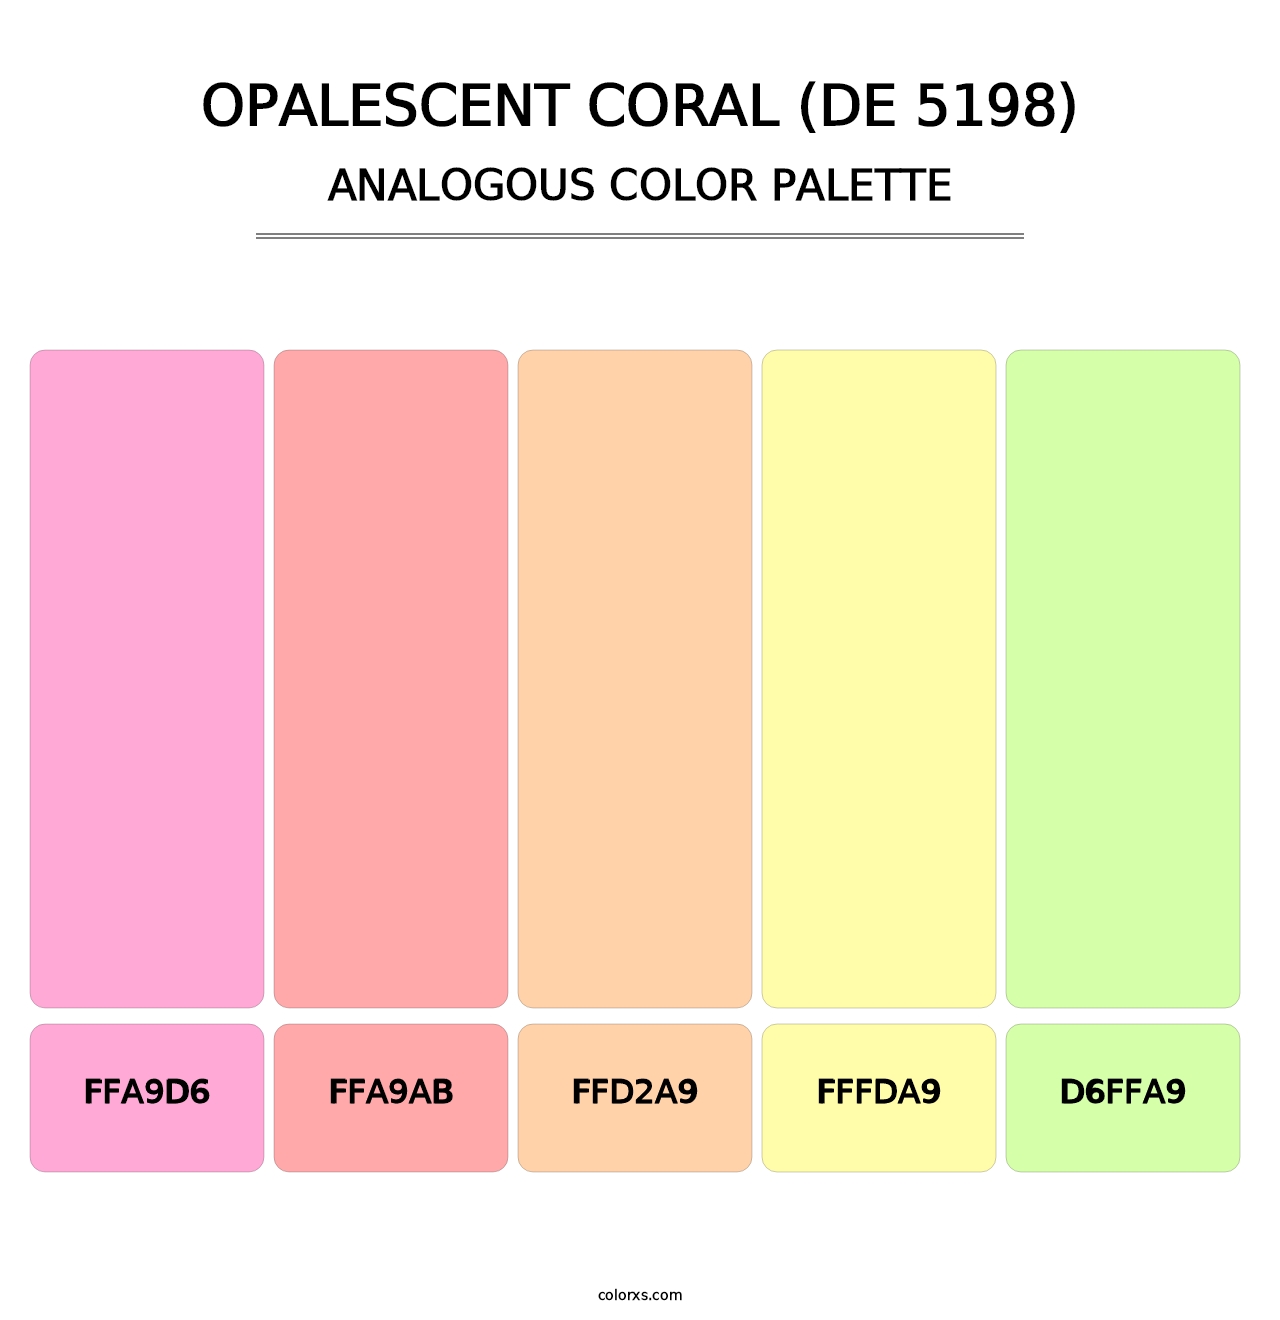 Opalescent Coral (DE 5198) - Analogous Color Palette